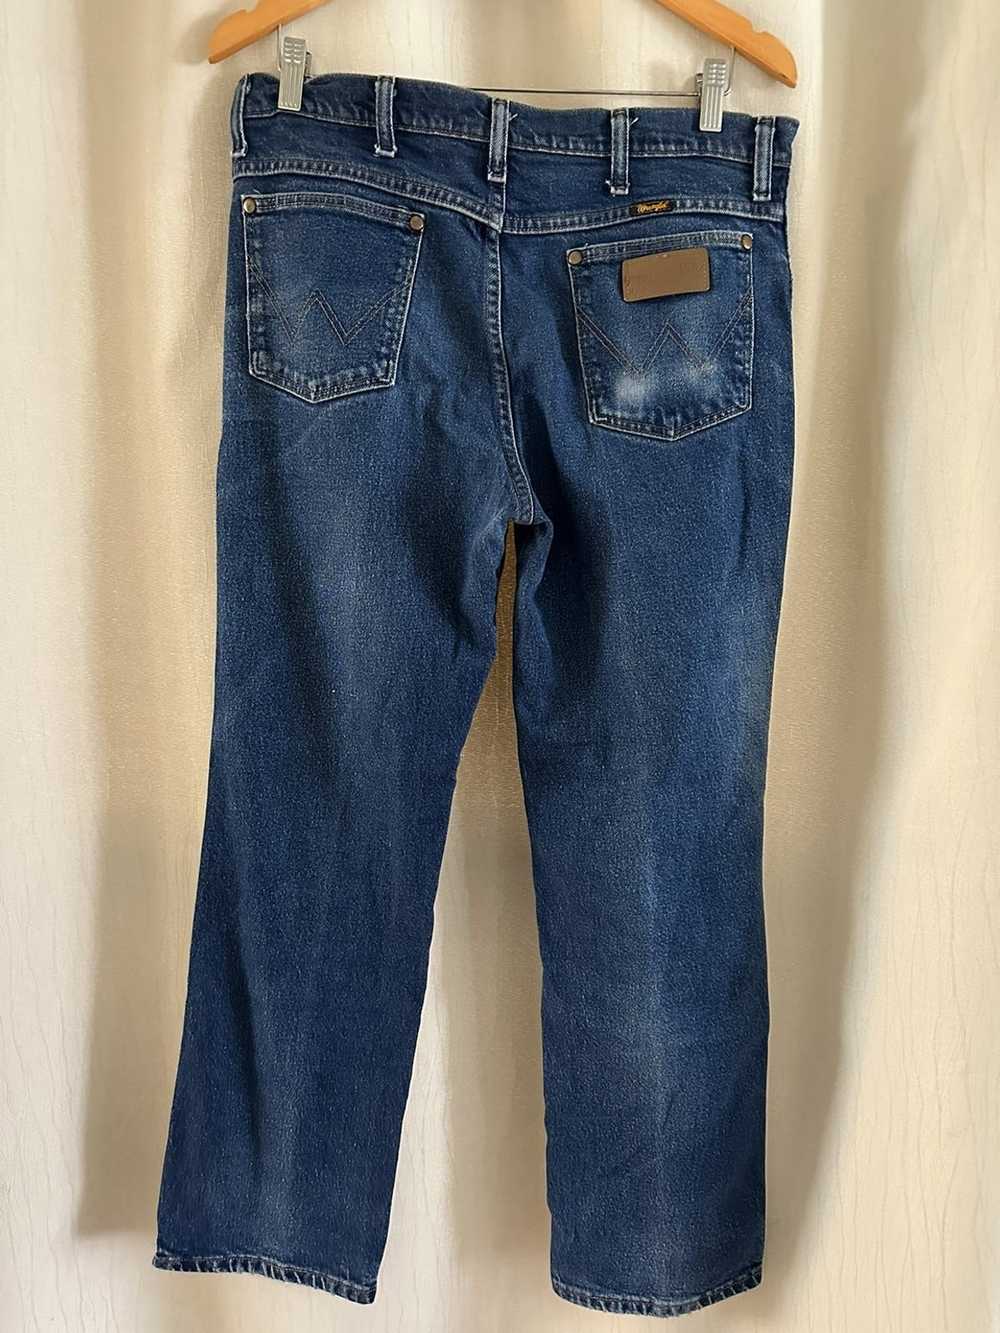 Vintage × Wrangler Vintage wrangle jeans - image 2